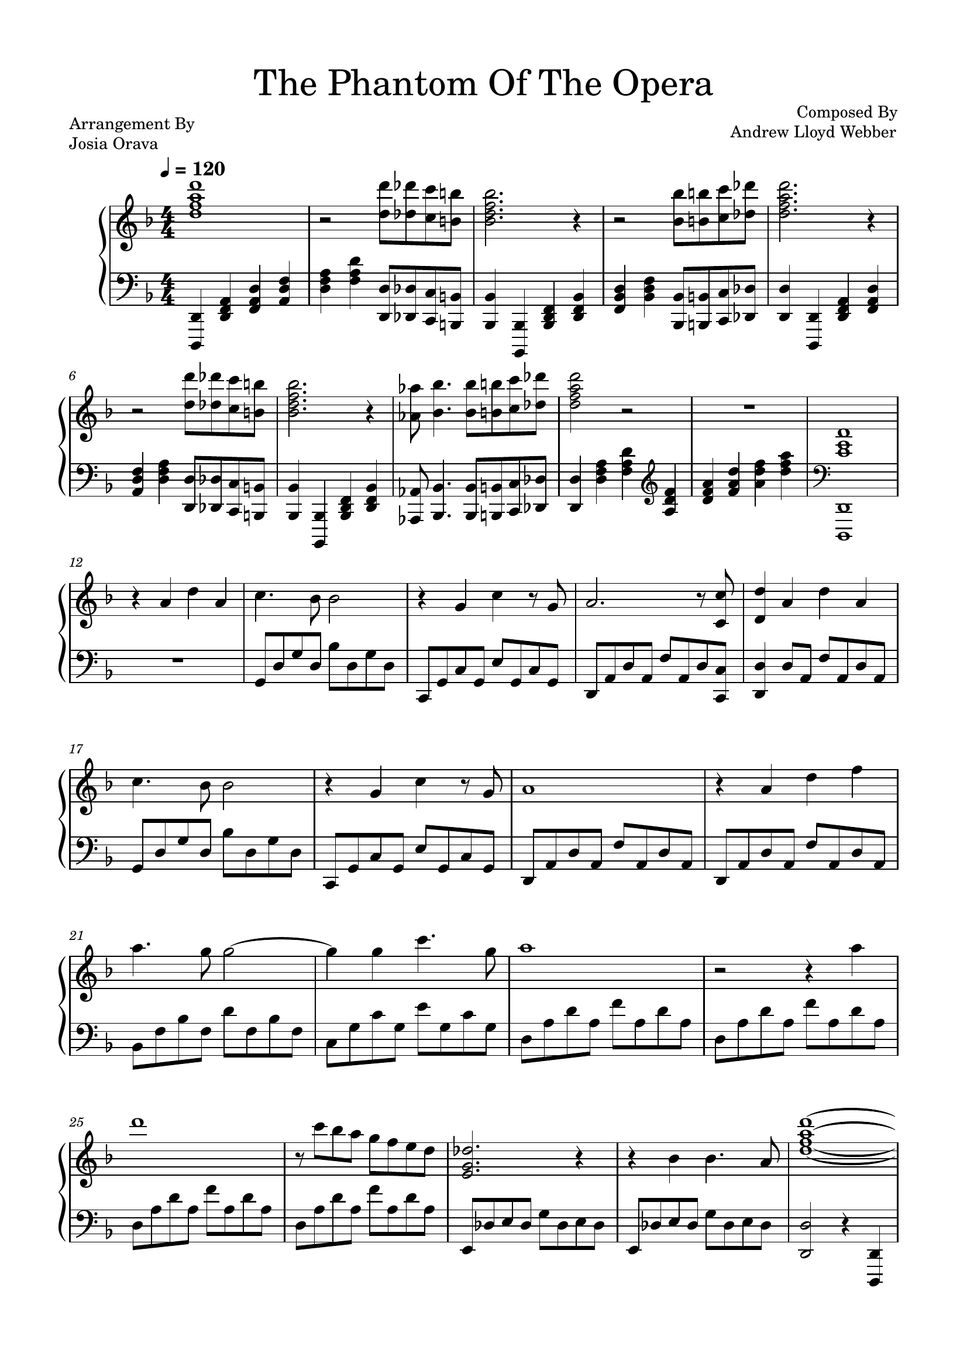 Andrew Lloyd Webber - The Phantom Of The Opera (Piano Sheet) by Josia Orava